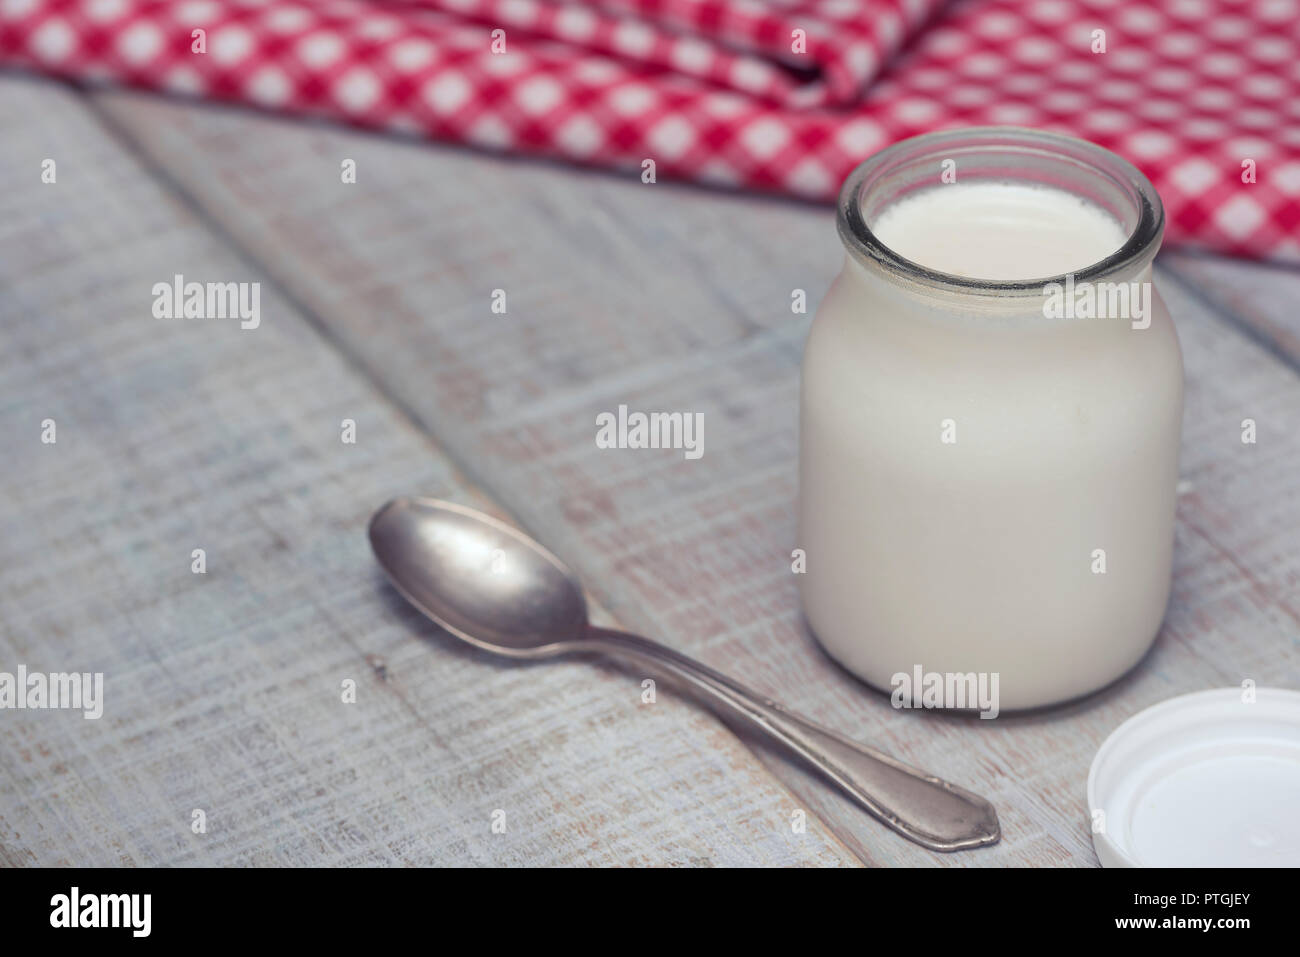 Lecker und gesund weißen hausgemachte Joghurt in Gläsern auf einem weißen Holztisch. Bereit, wie diese zu essen, oder das Hinzufügen von Obst, Getreide oder Nüsse. Stockfoto